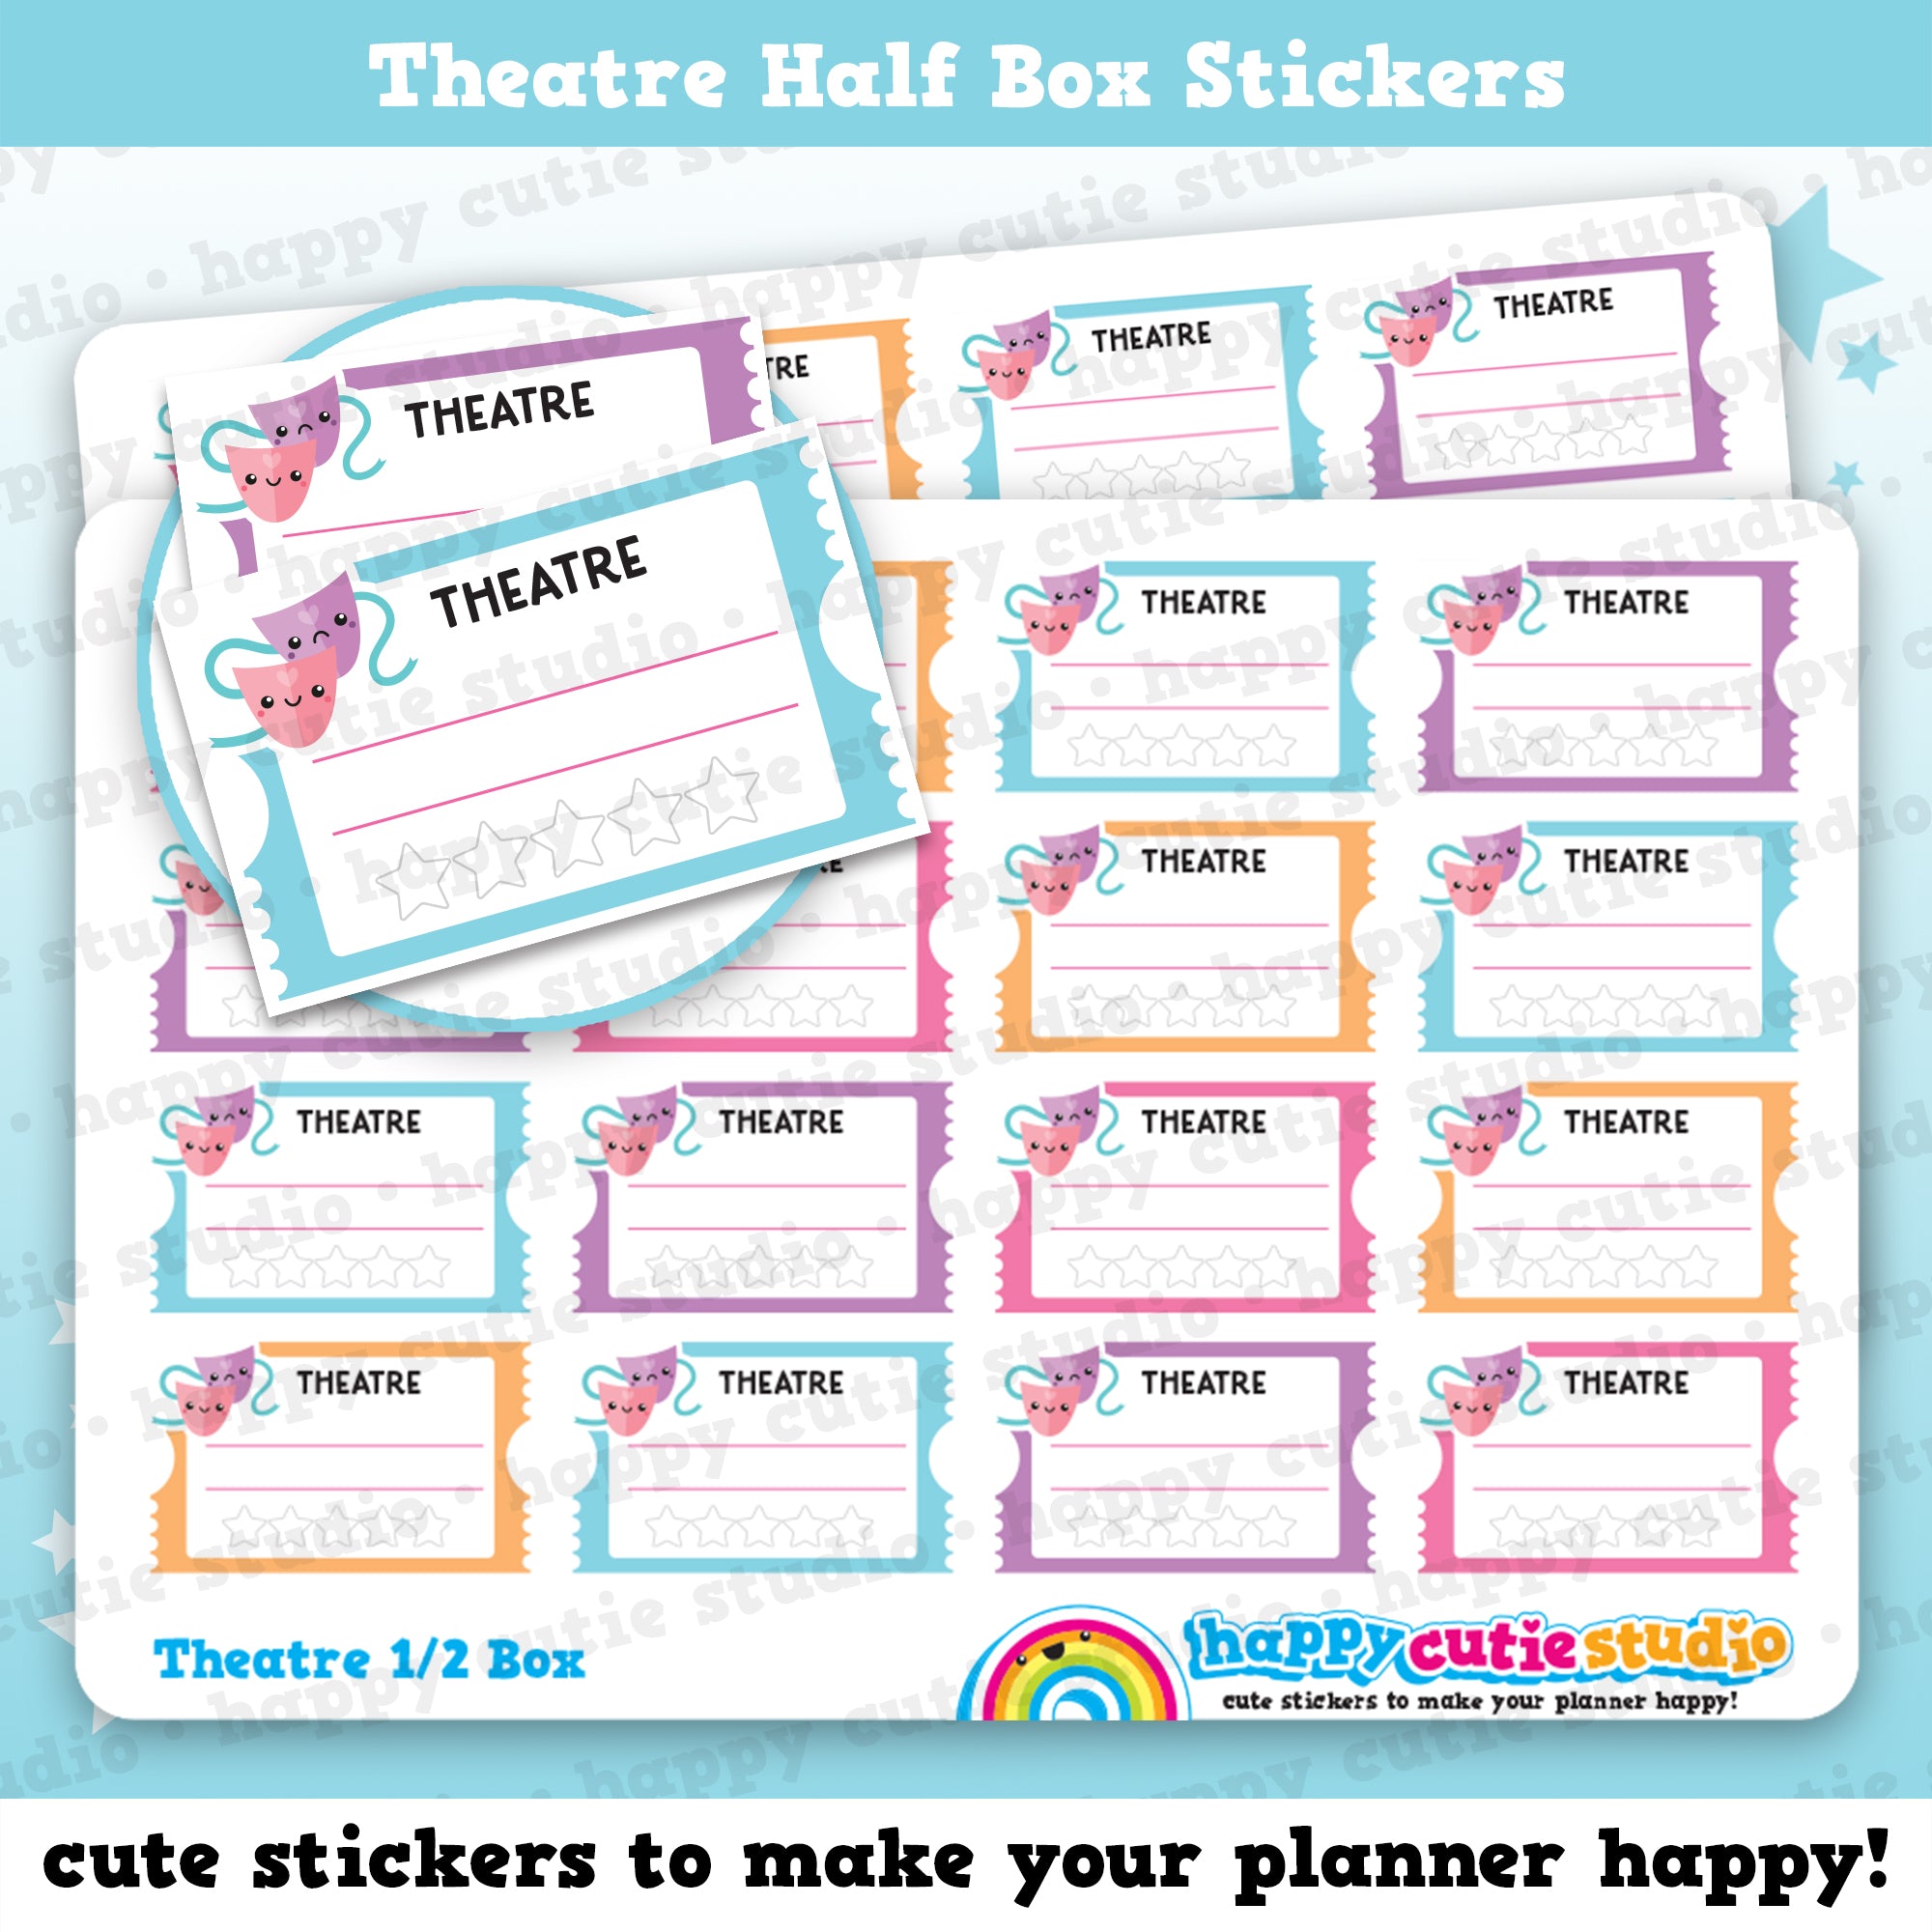 16 Cute Half Box Theatre Planner Stickers